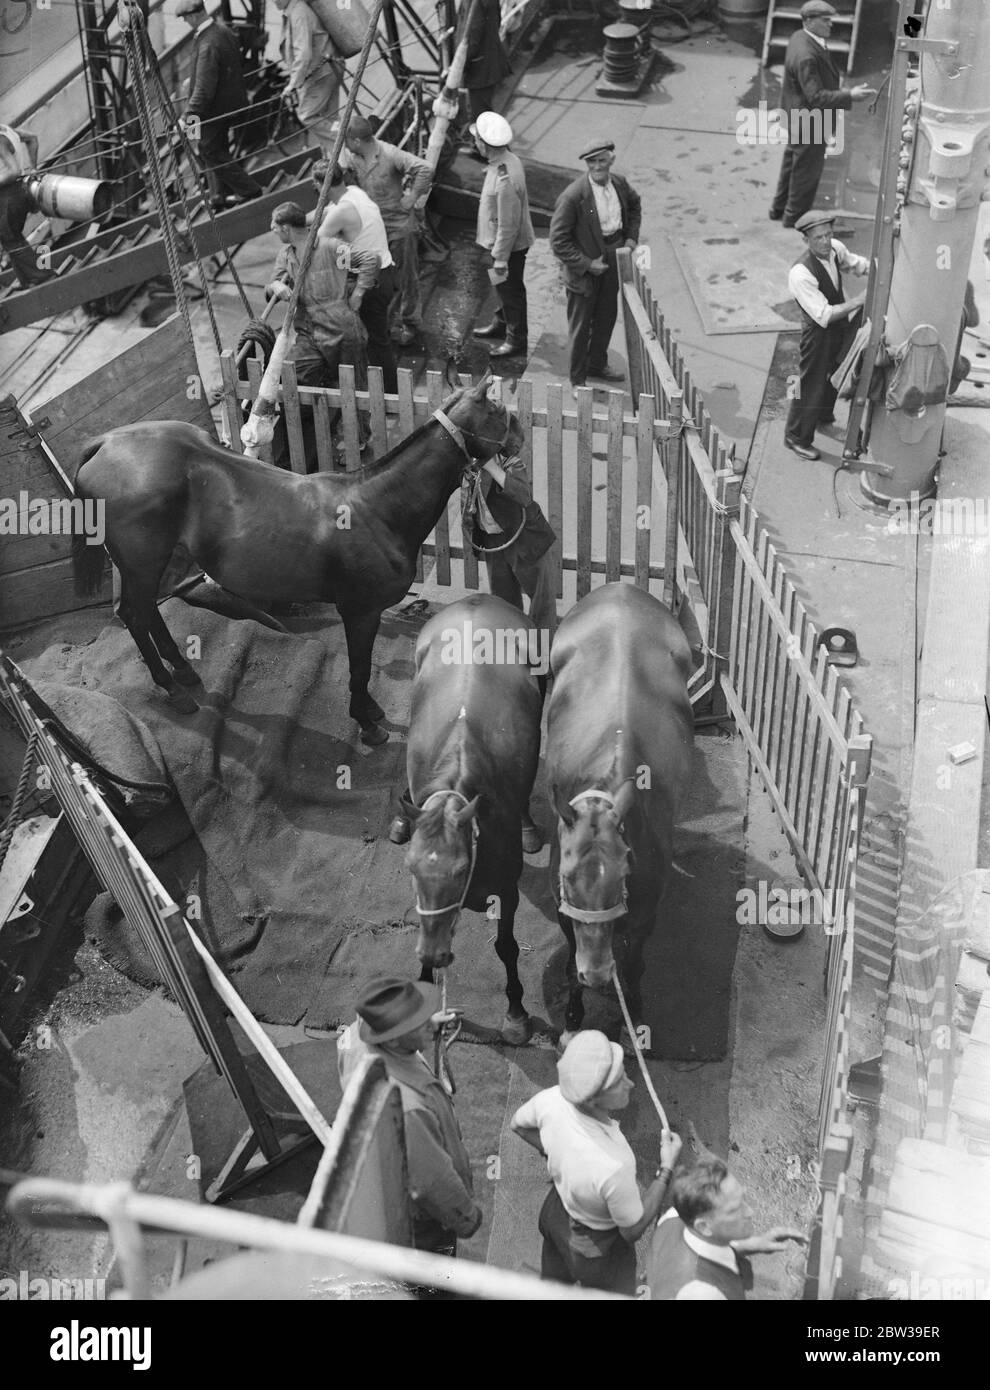 Fünfunddreißig Polo Ponys begeben sich nach Amerika. 35 Polo Ponys, die in den internationalen Polo-Spielen in Meadow Brook, Long Island, USA verwendet werden sollen, wurden auf dem American Trader in Royal Albert Docks, London für New York eingesetzt. Foto zeigt Polo Ponys, die an Bord des American Trader in den Royal Albert Docks gehen. 26 Juli 1935 Stockfoto